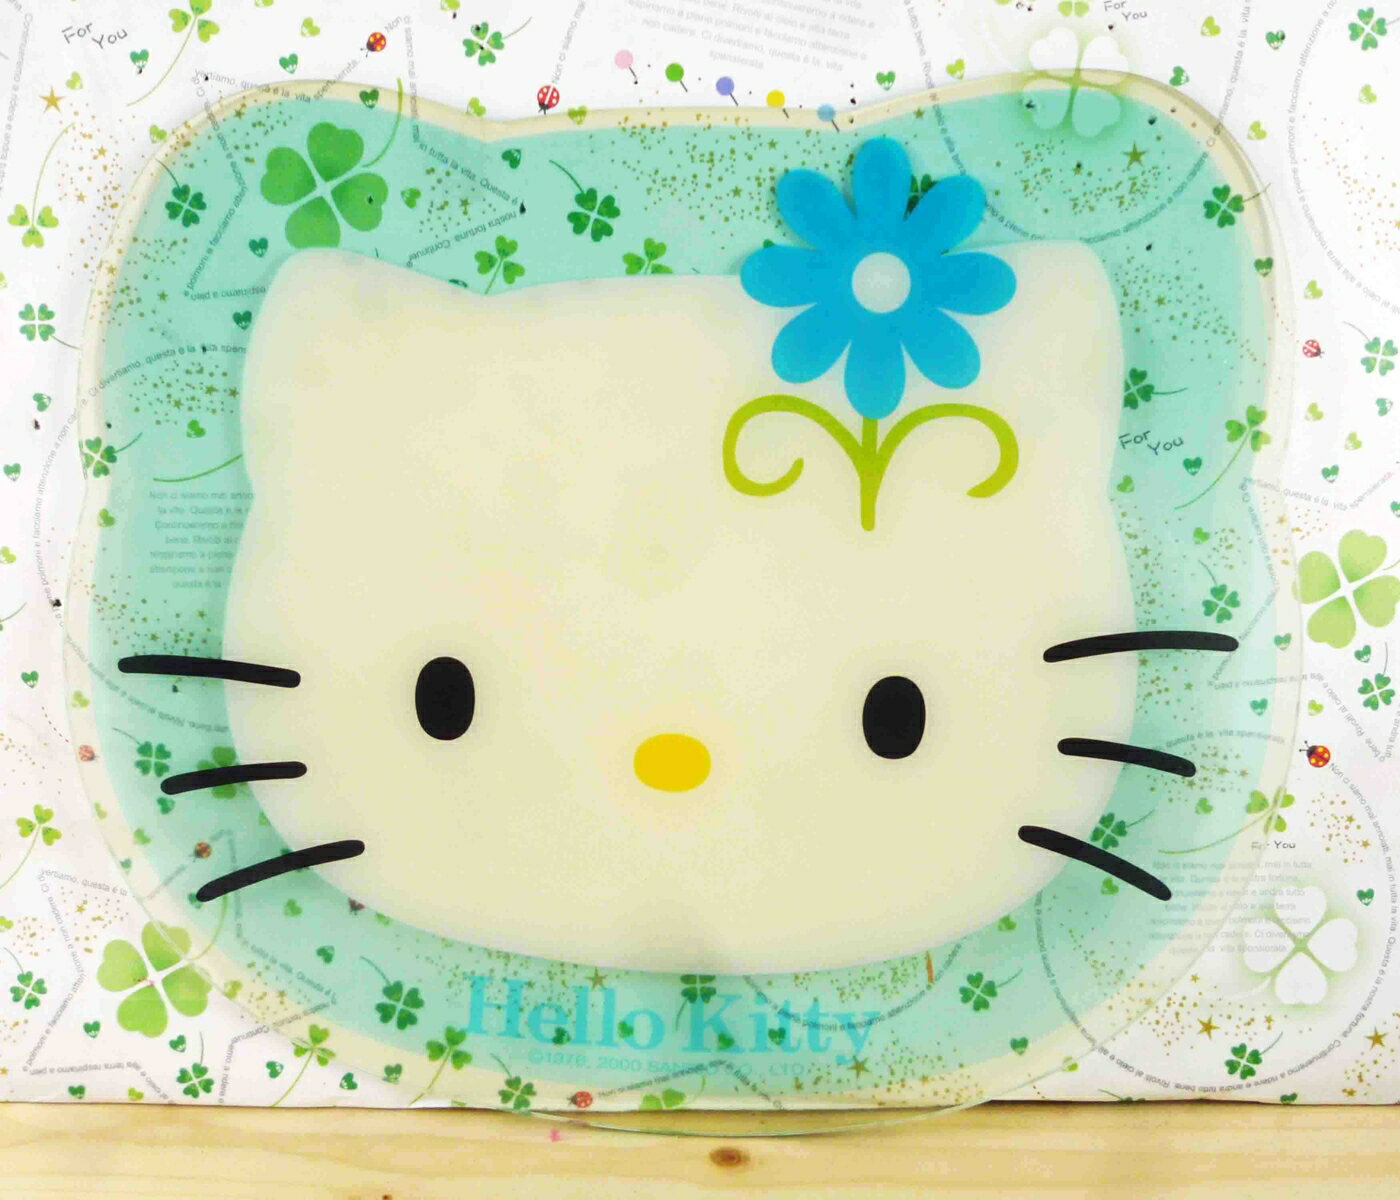 【震撼精品百貨】Hello Kitty 凱蒂貓 滑鼠墊-瑪格麗特*24016 震撼日式精品百貨